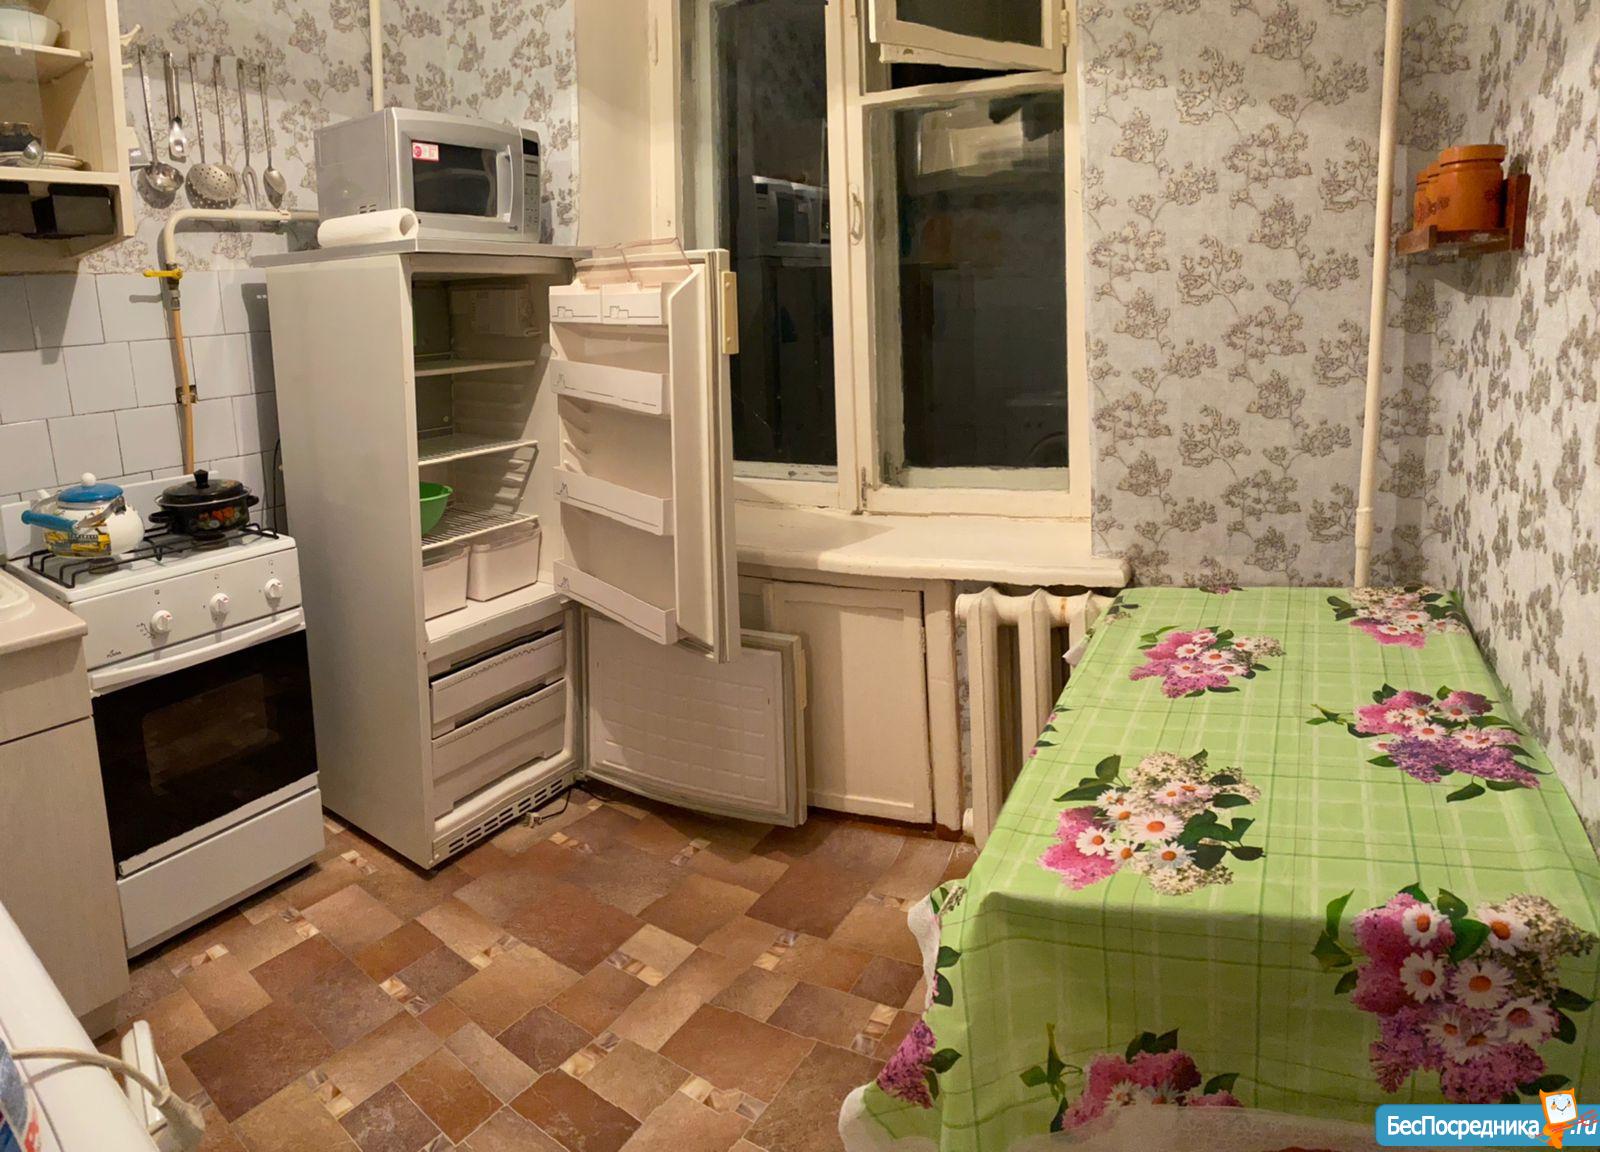 Снять квартиру в борисове на длительный срок недорого с мебелью 2 комнатную